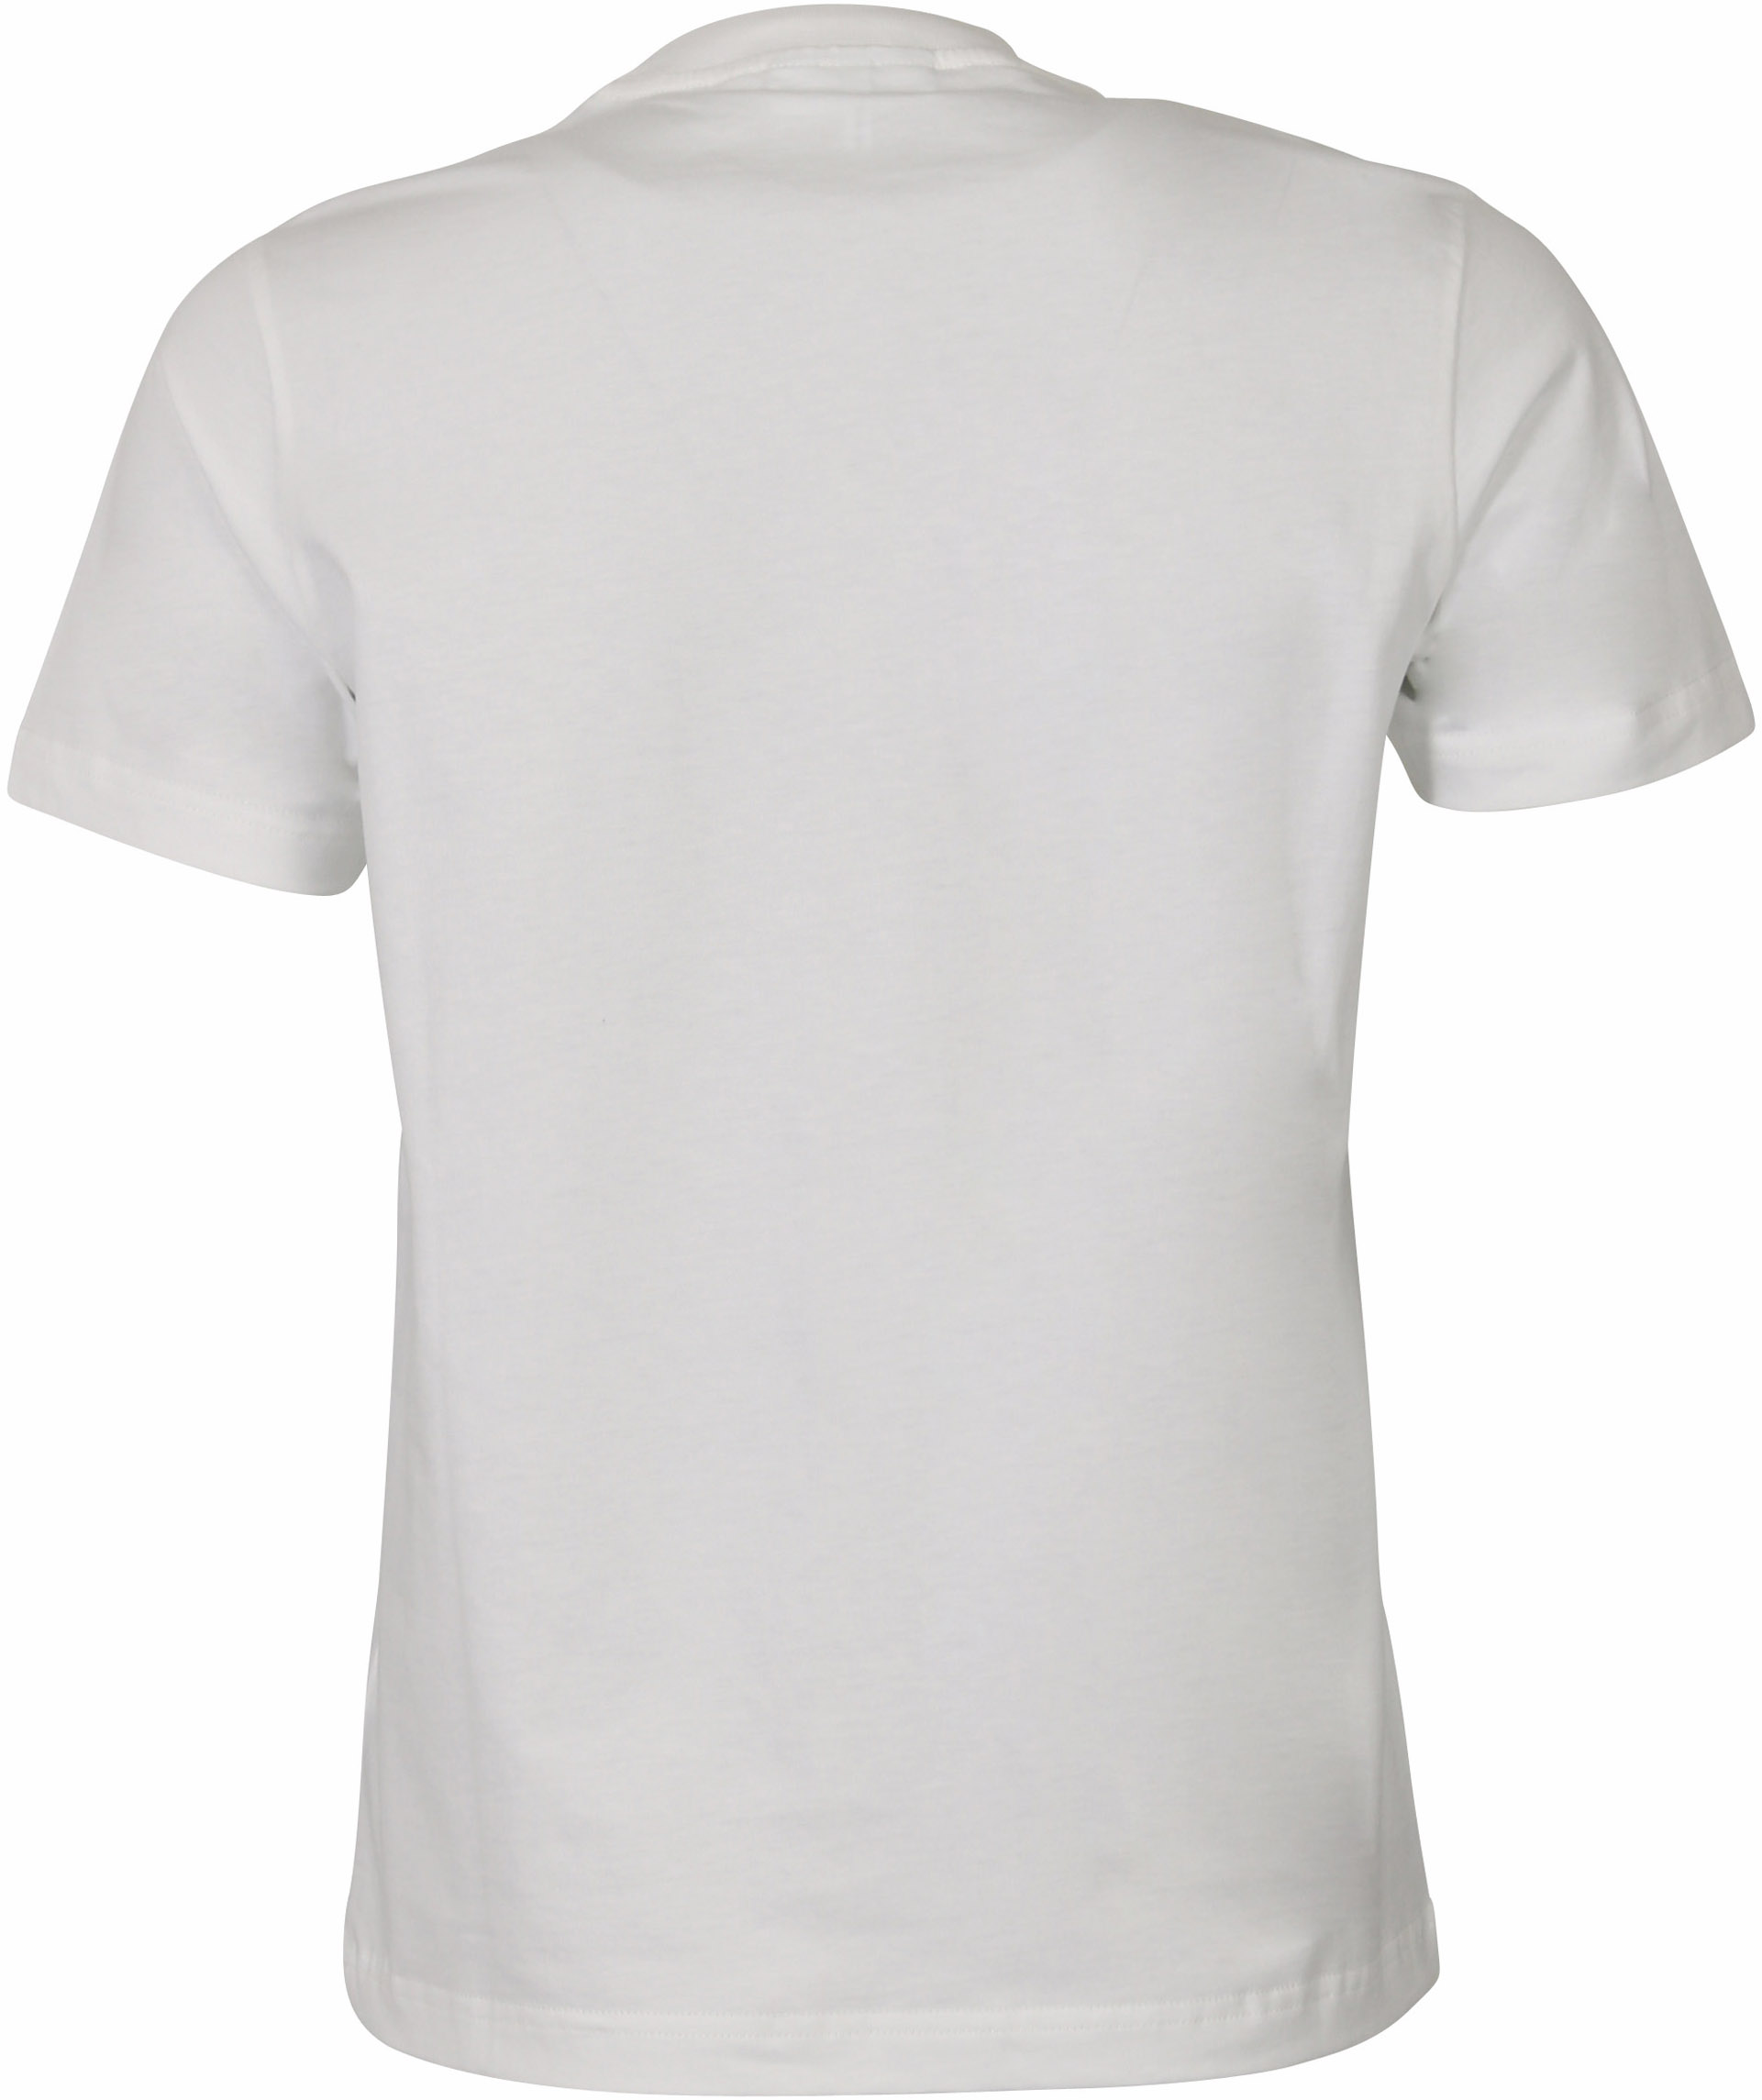 Ganni T-Shirt Photo Print White